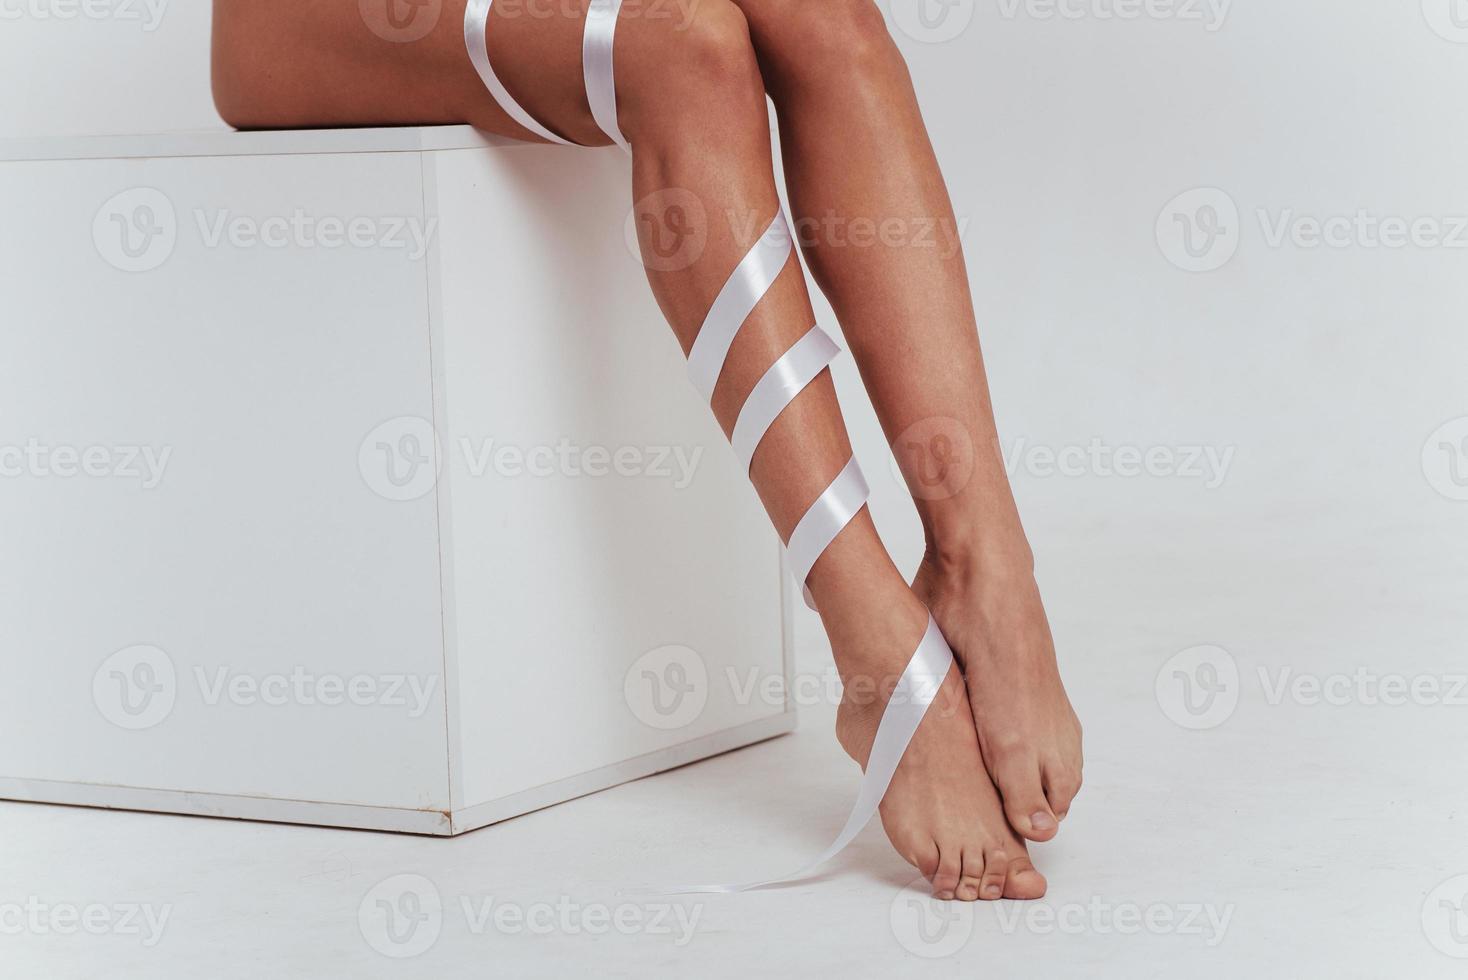 gambe femminili all'interno bianco con nastri sopra. foto ritagliata